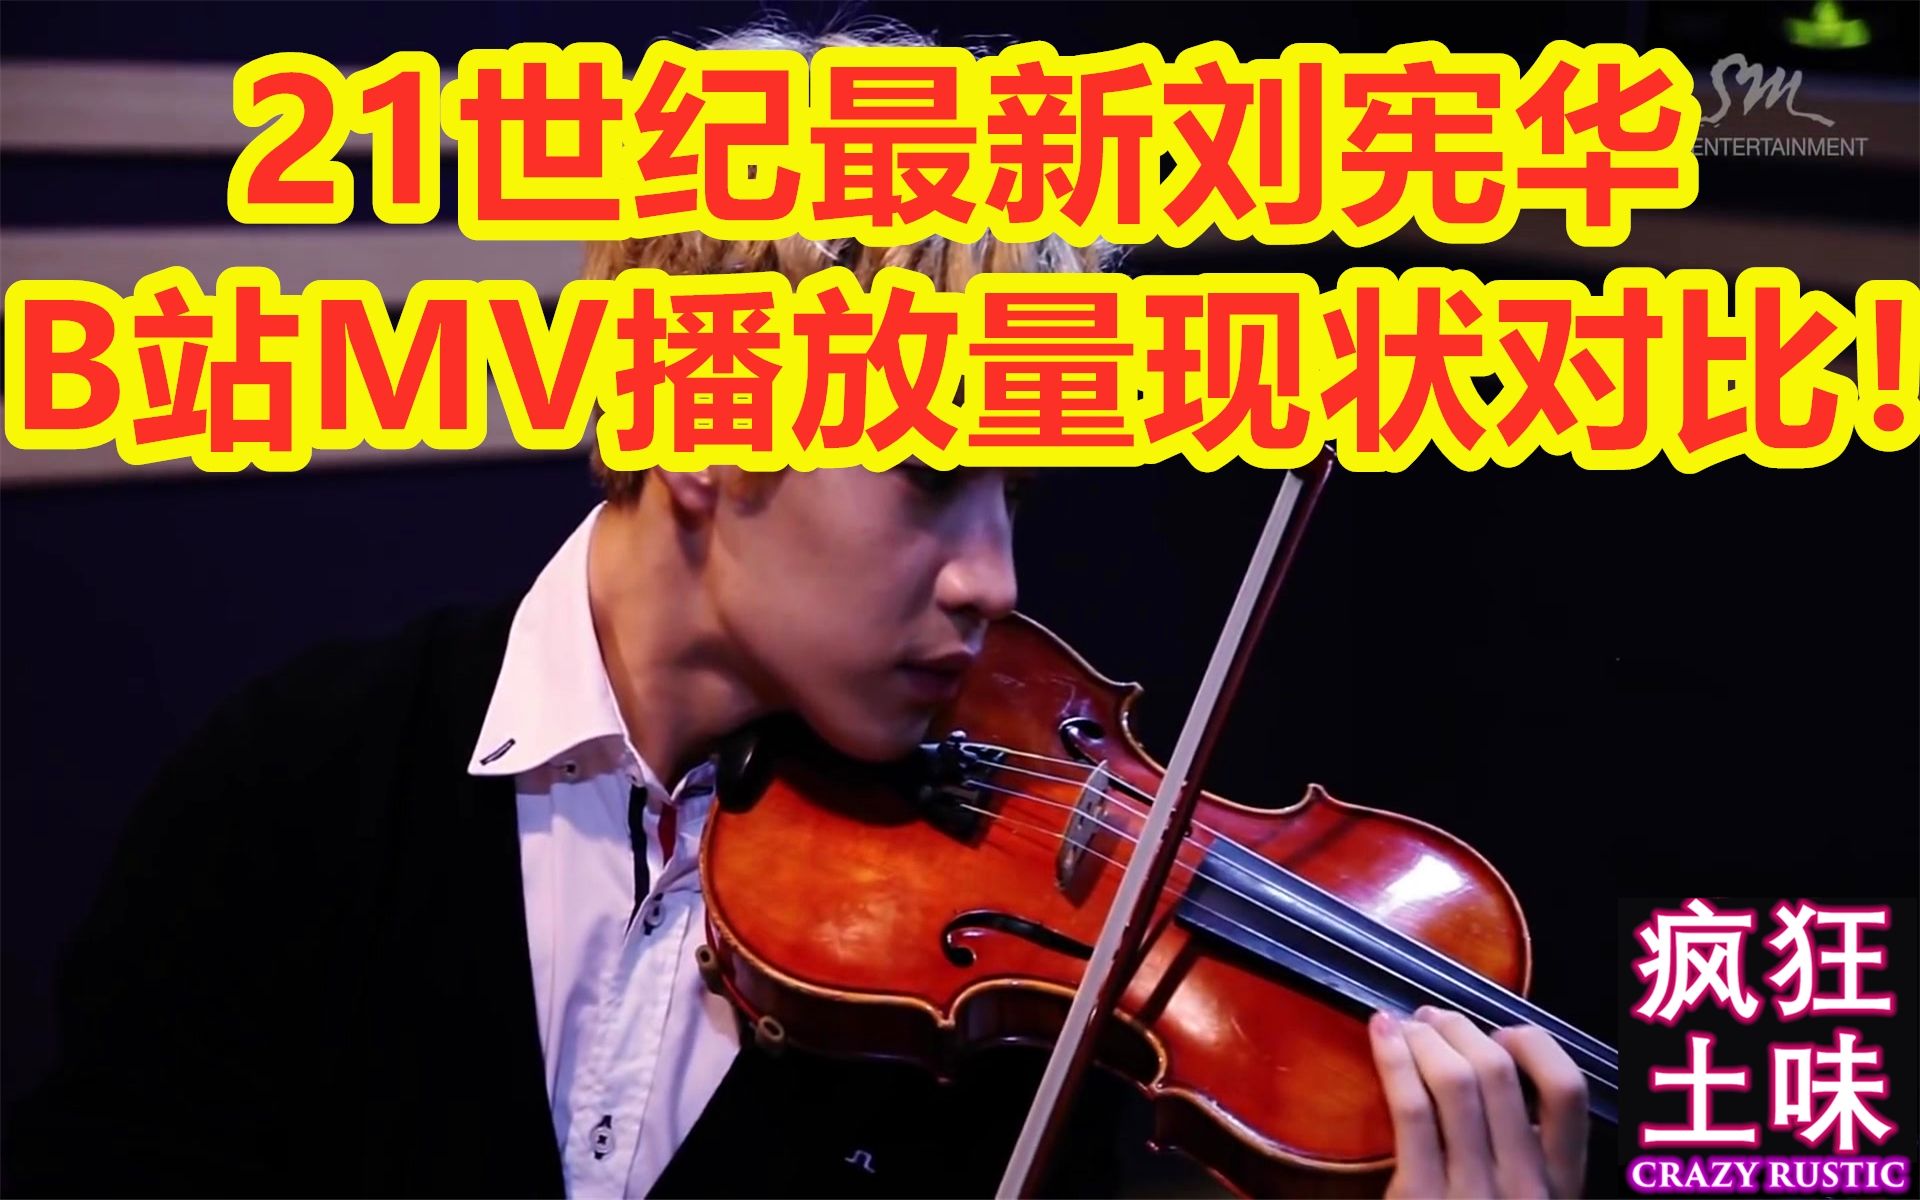 21世纪最新刘宪华B站MV播放量现状对比